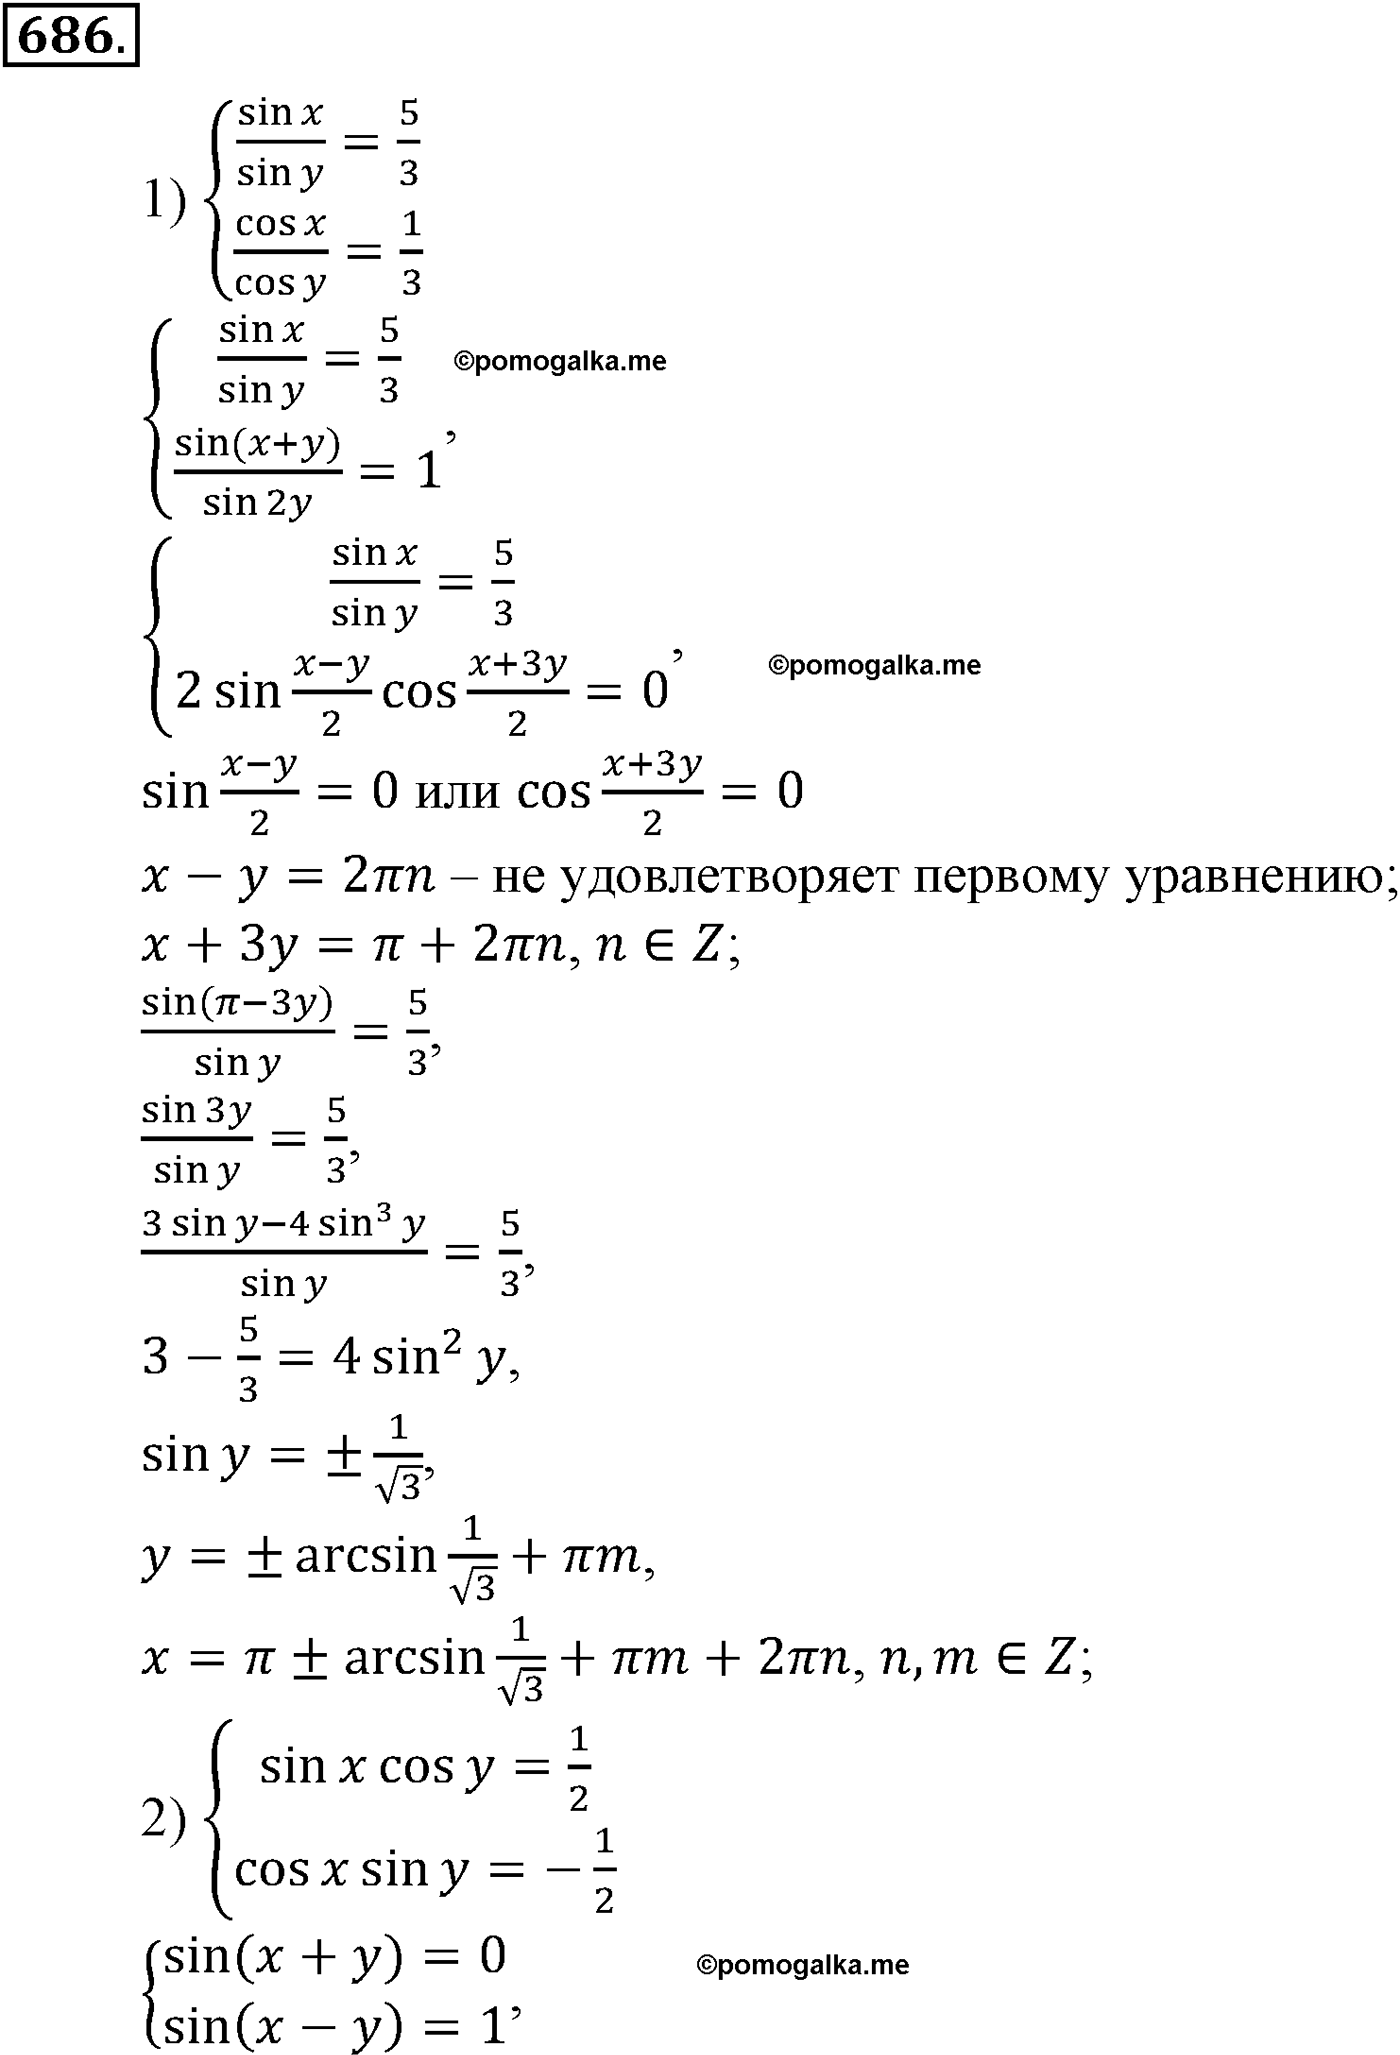 разбор задачи №686 по алгебре за 10-11 класс из учебника Алимова, Колягина